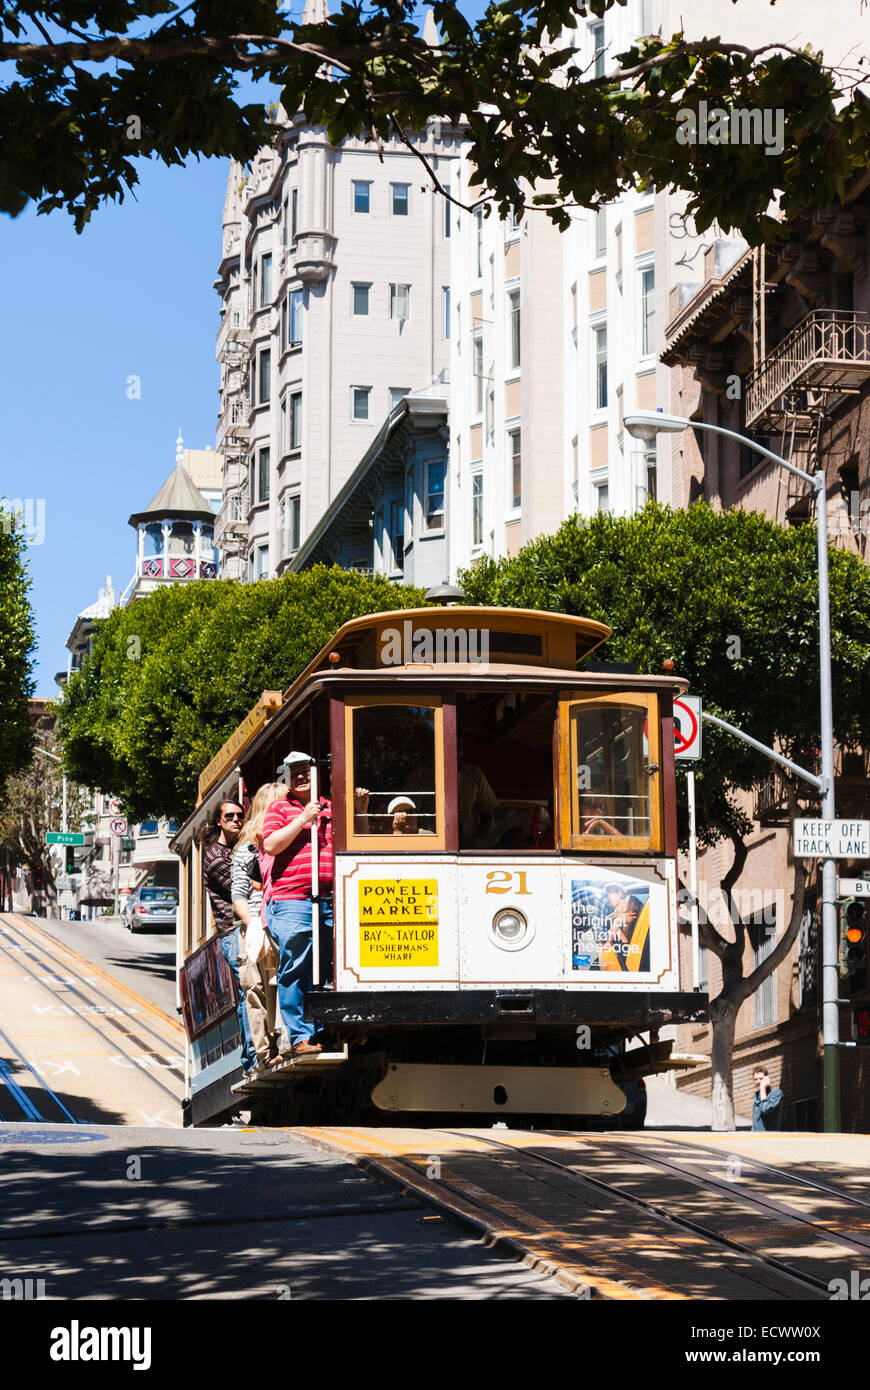 Los turistas montando el famoso teleférico en Powell st, san Francisco, California, EE.UU. Foto de stock